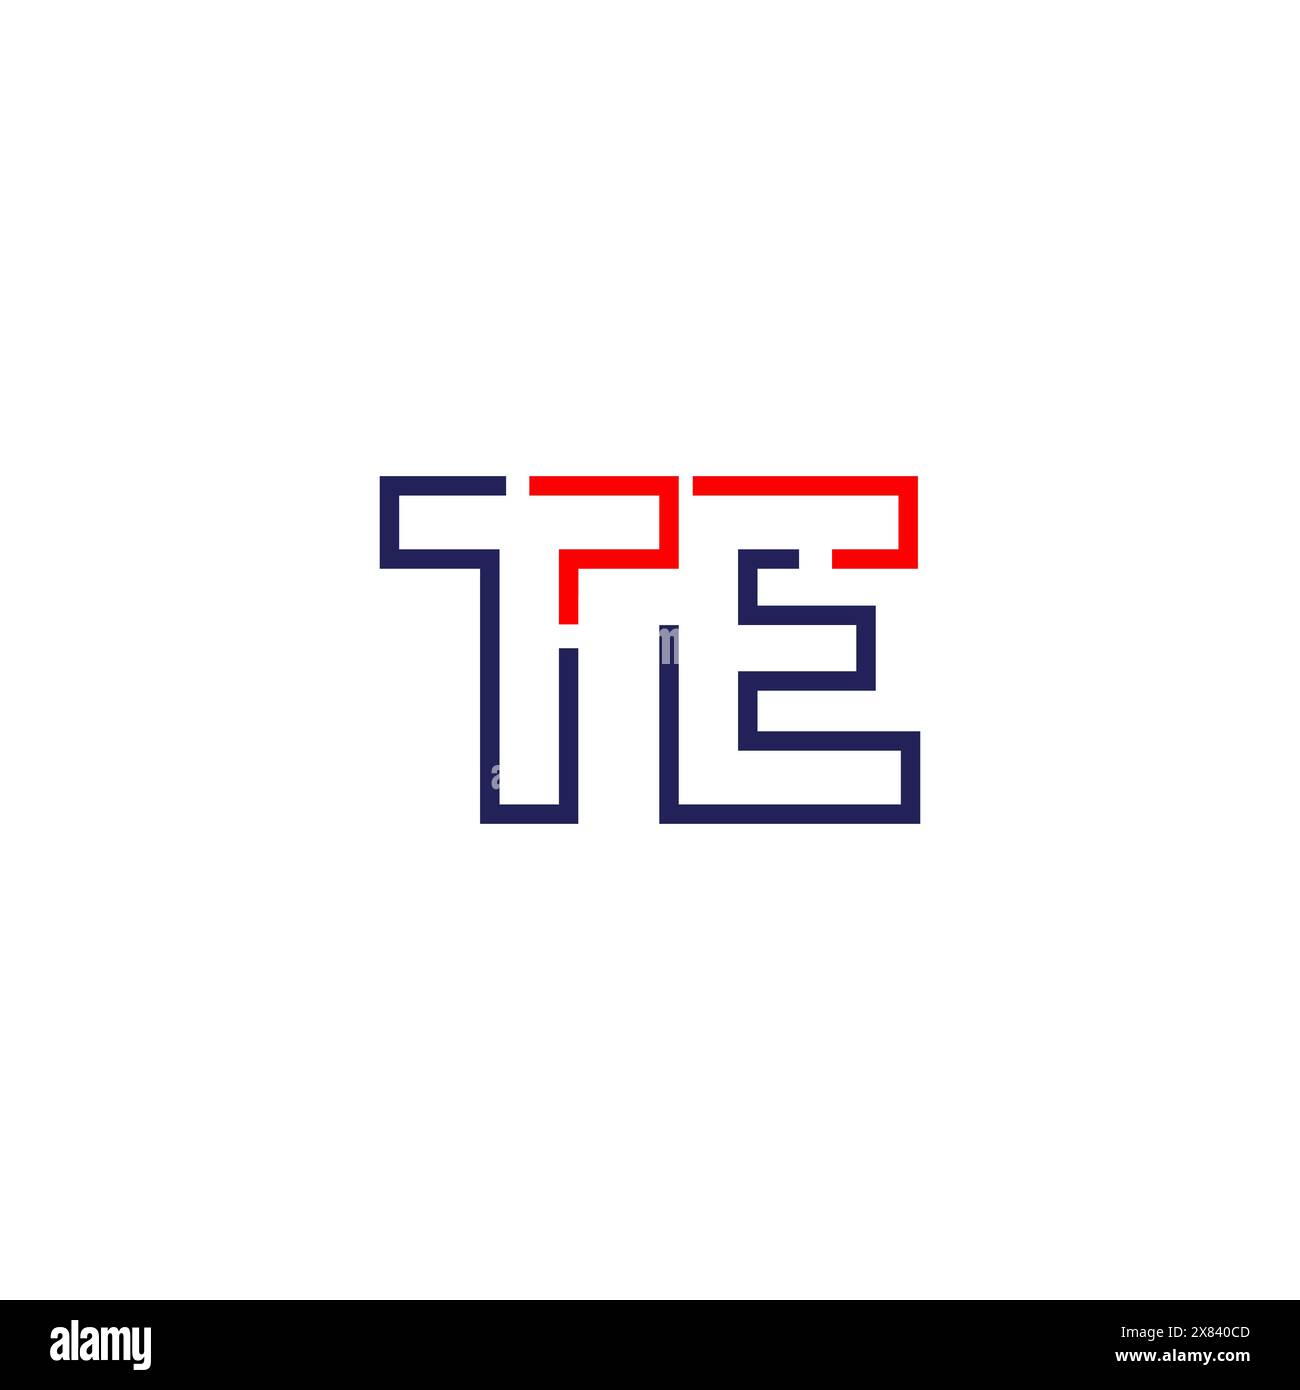 TE tech logo concept design Stock Vector